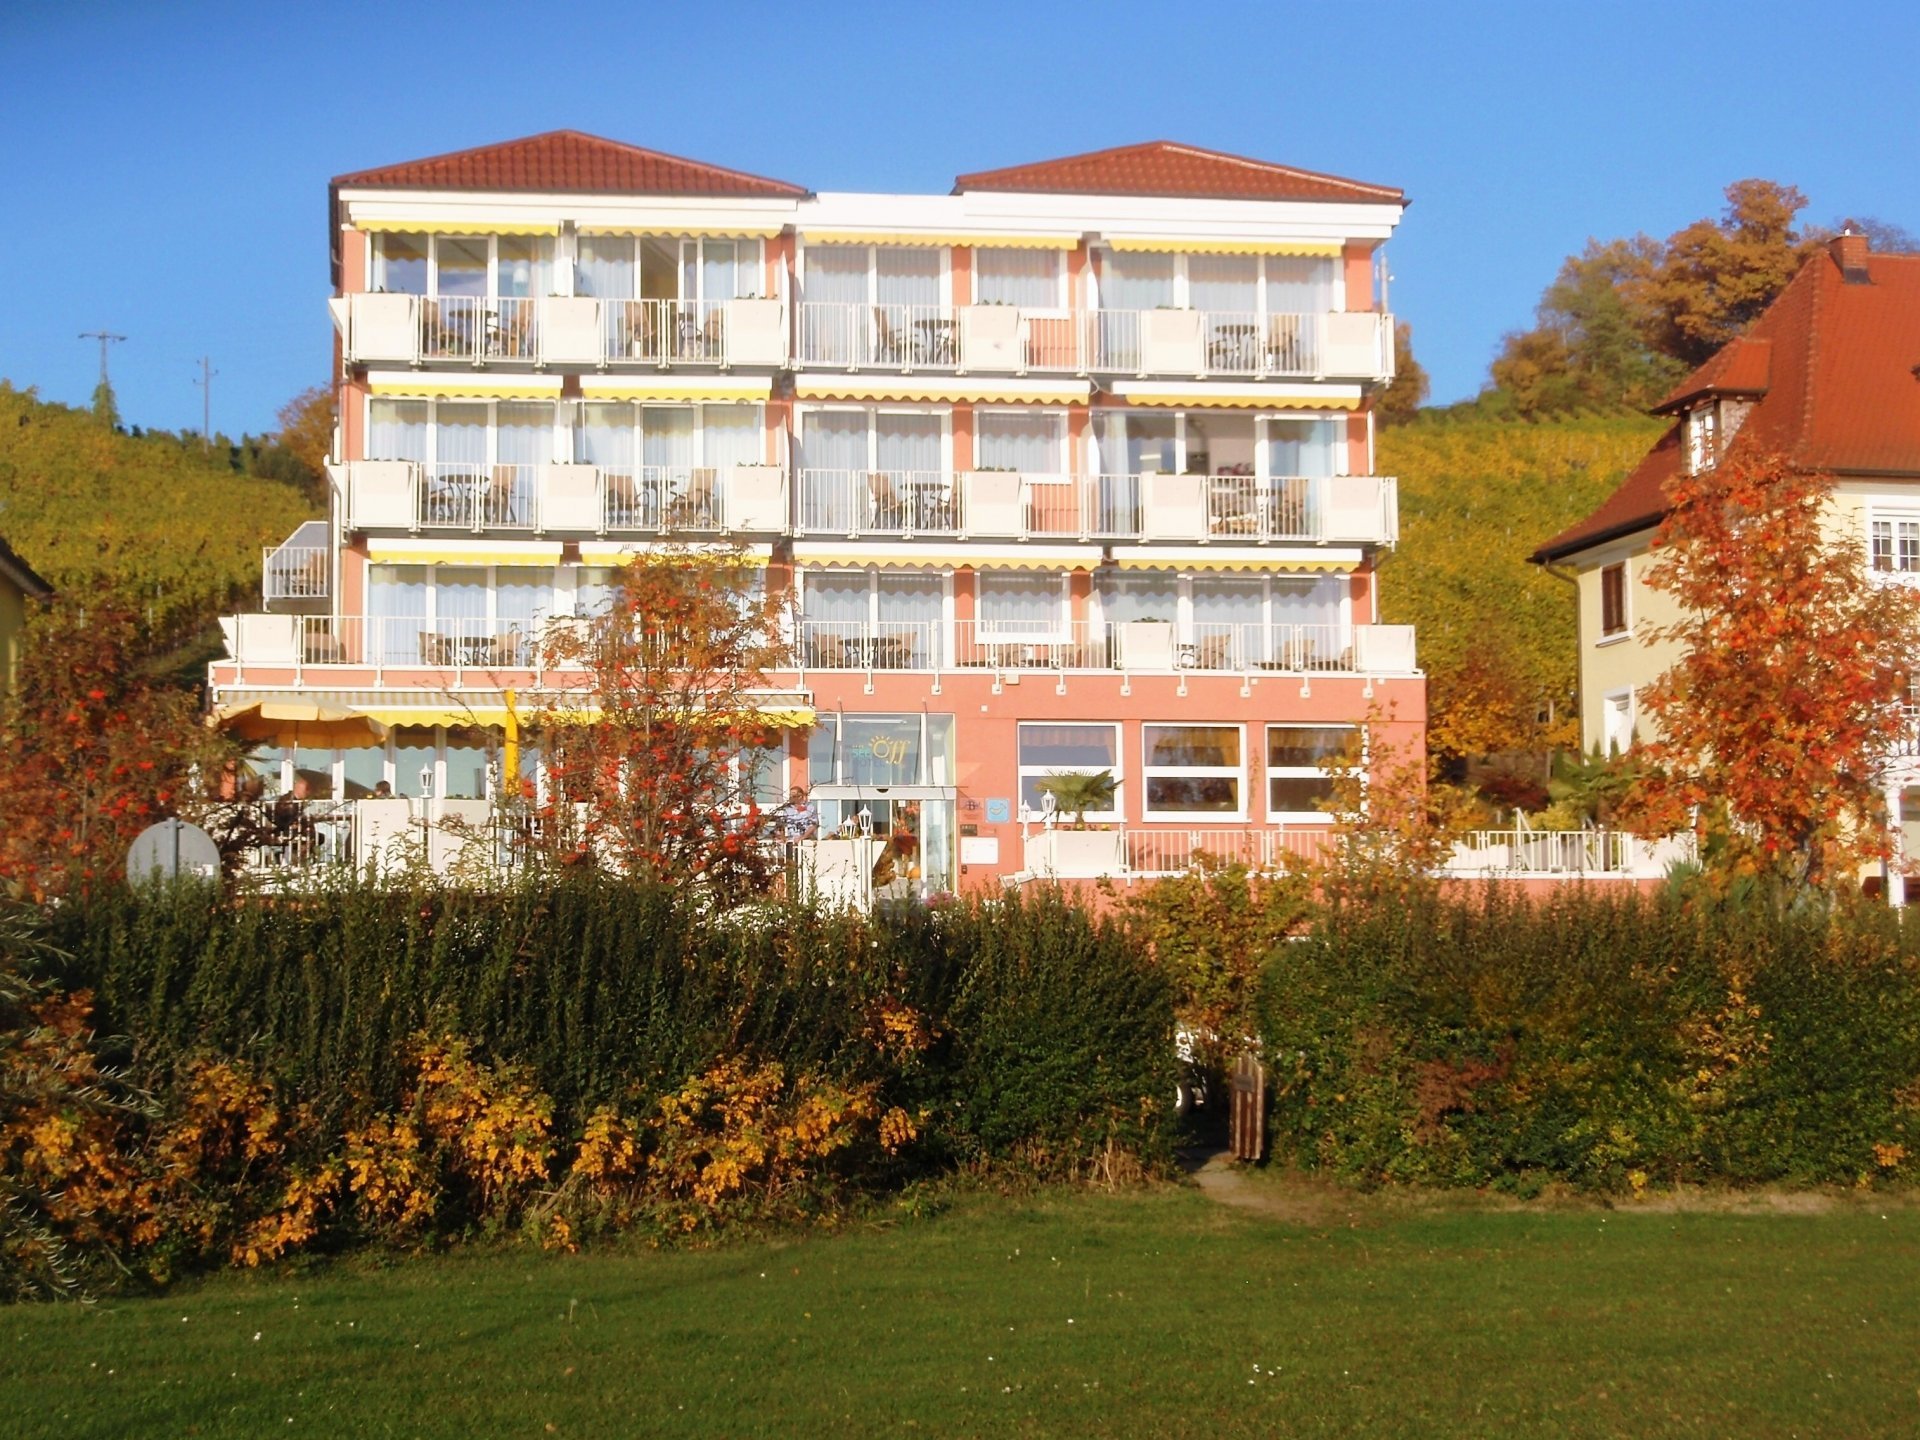 8 Tage Gesundheitsurlaub im Frühjahr 2023 – Basenfasten am Bodensee – See Hotel Off  (4 Sterne) in Meersburg, Baden-Württemberg inkl. All Inclusive